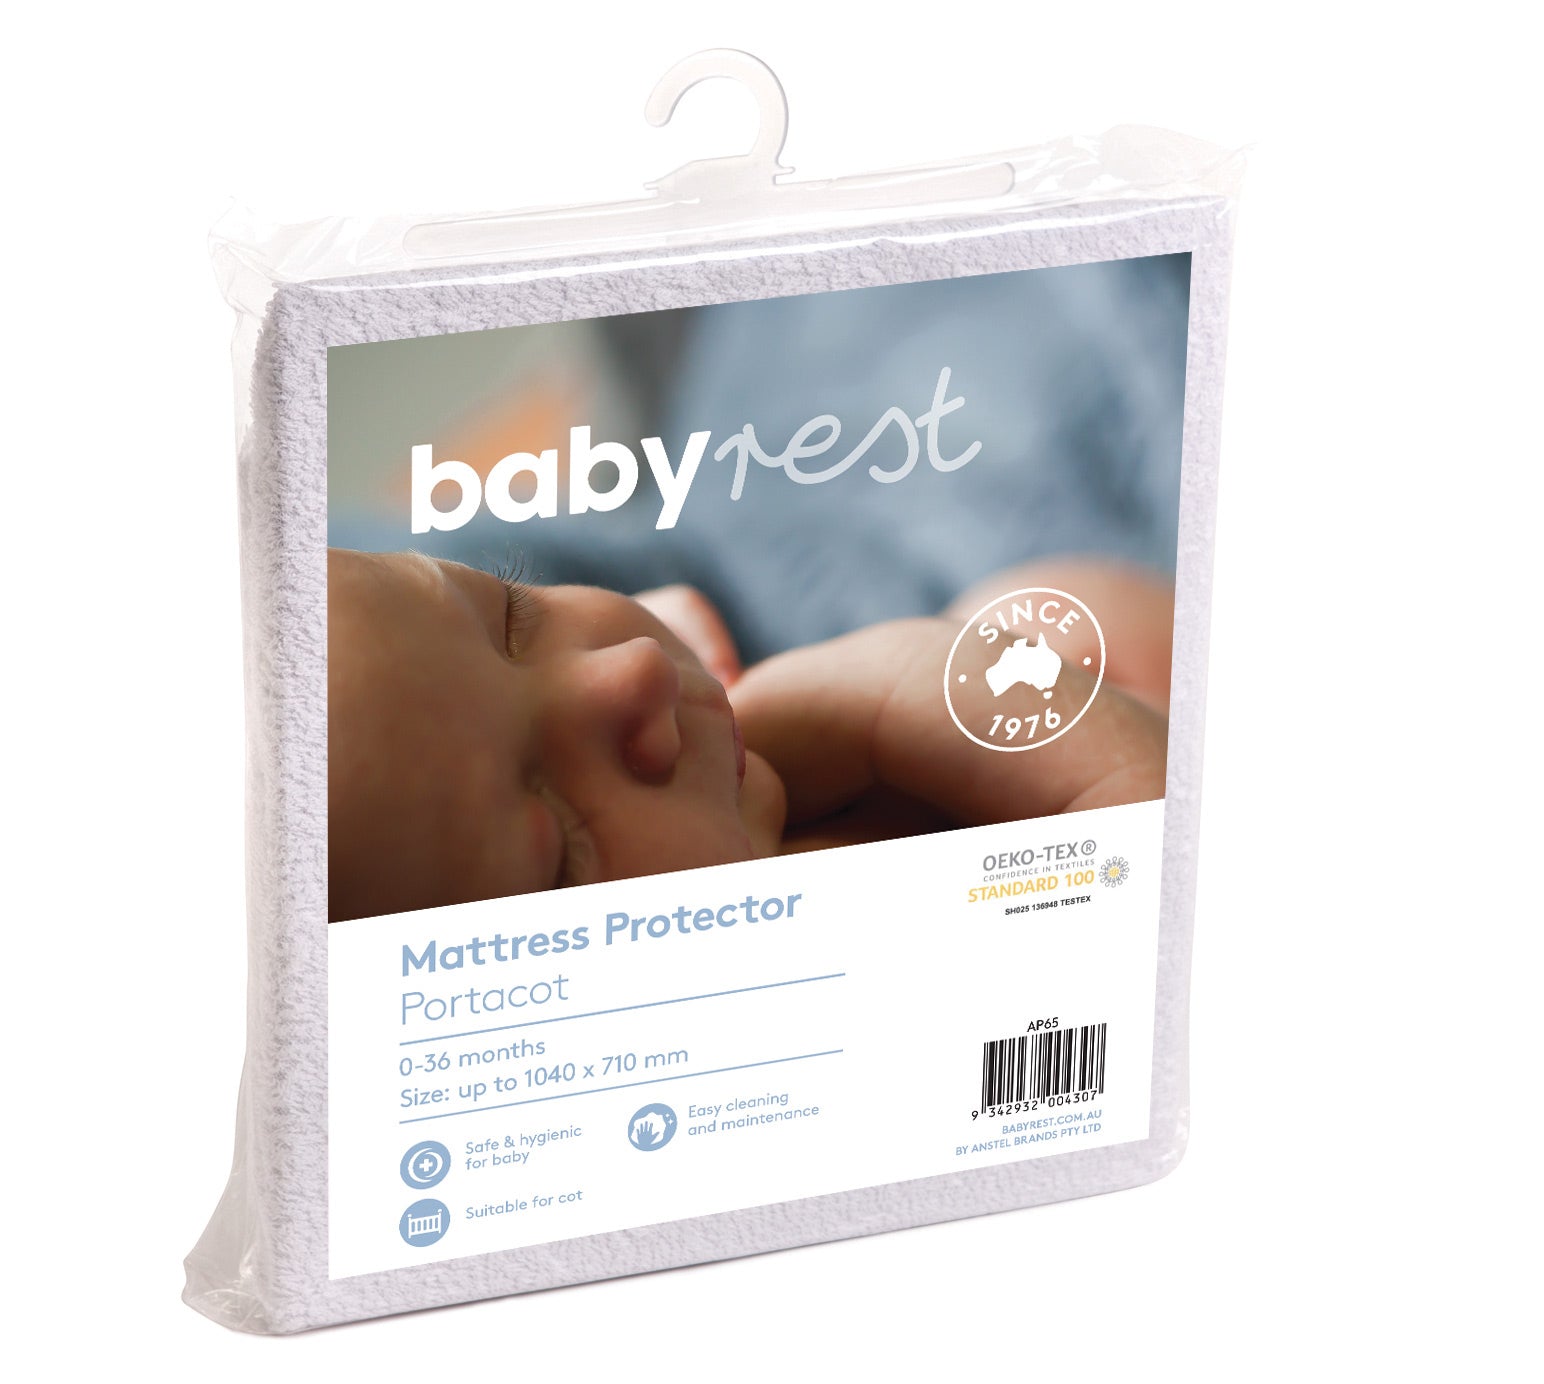 Babyrest Mattress Protector Portacot 1040 x 710